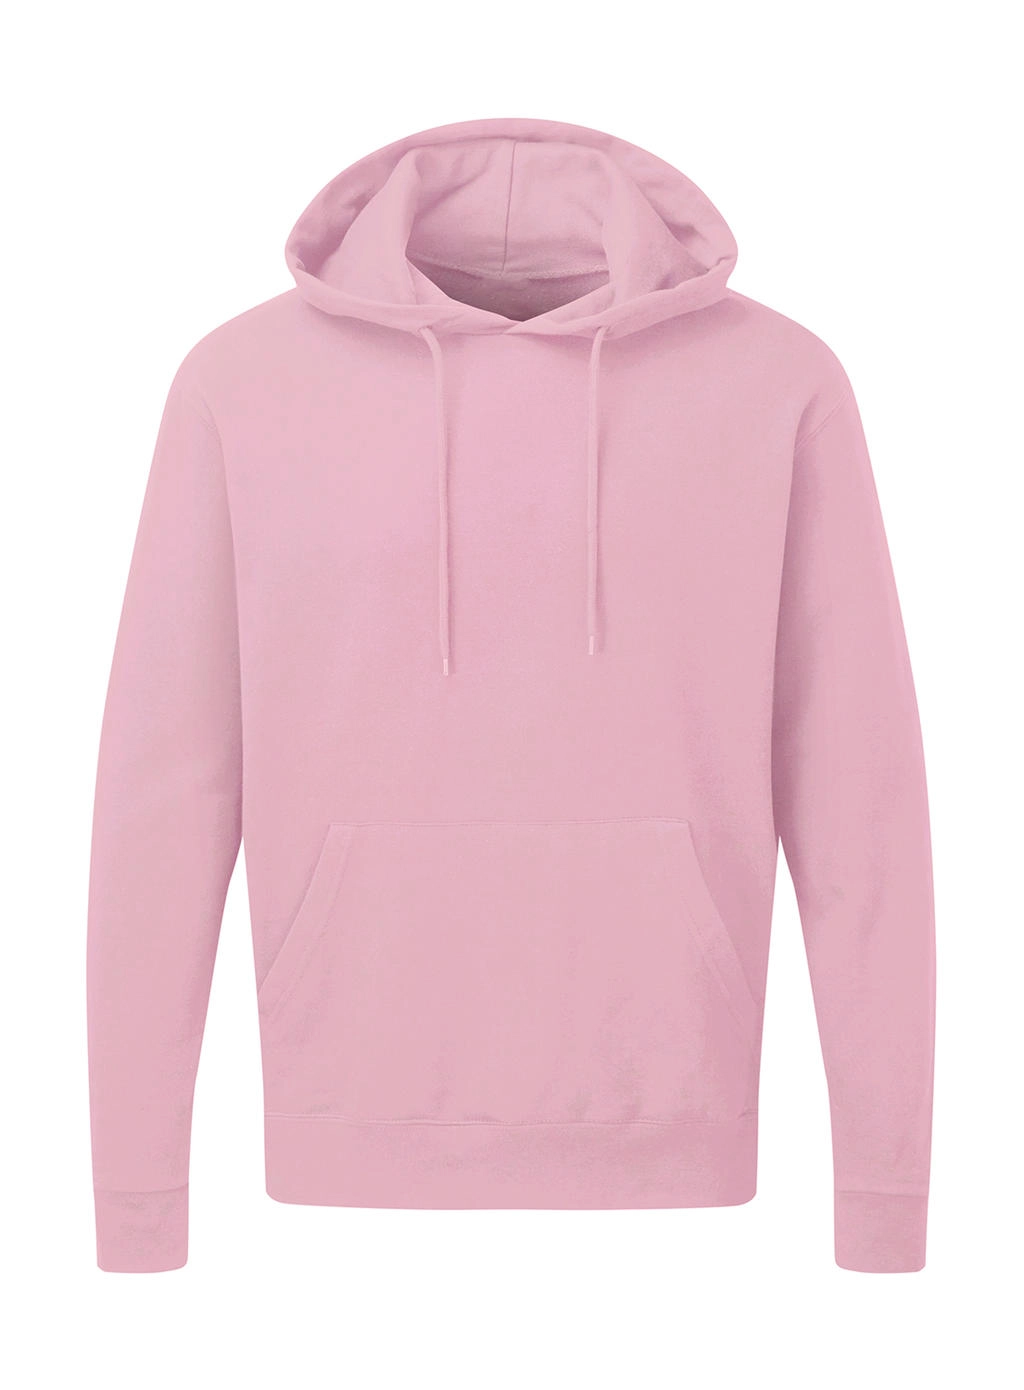 Hooded Sweatshirt Men zum Besticken und Bedrucken in der Farbe Pink mit Ihren Logo, Schriftzug oder Motiv.